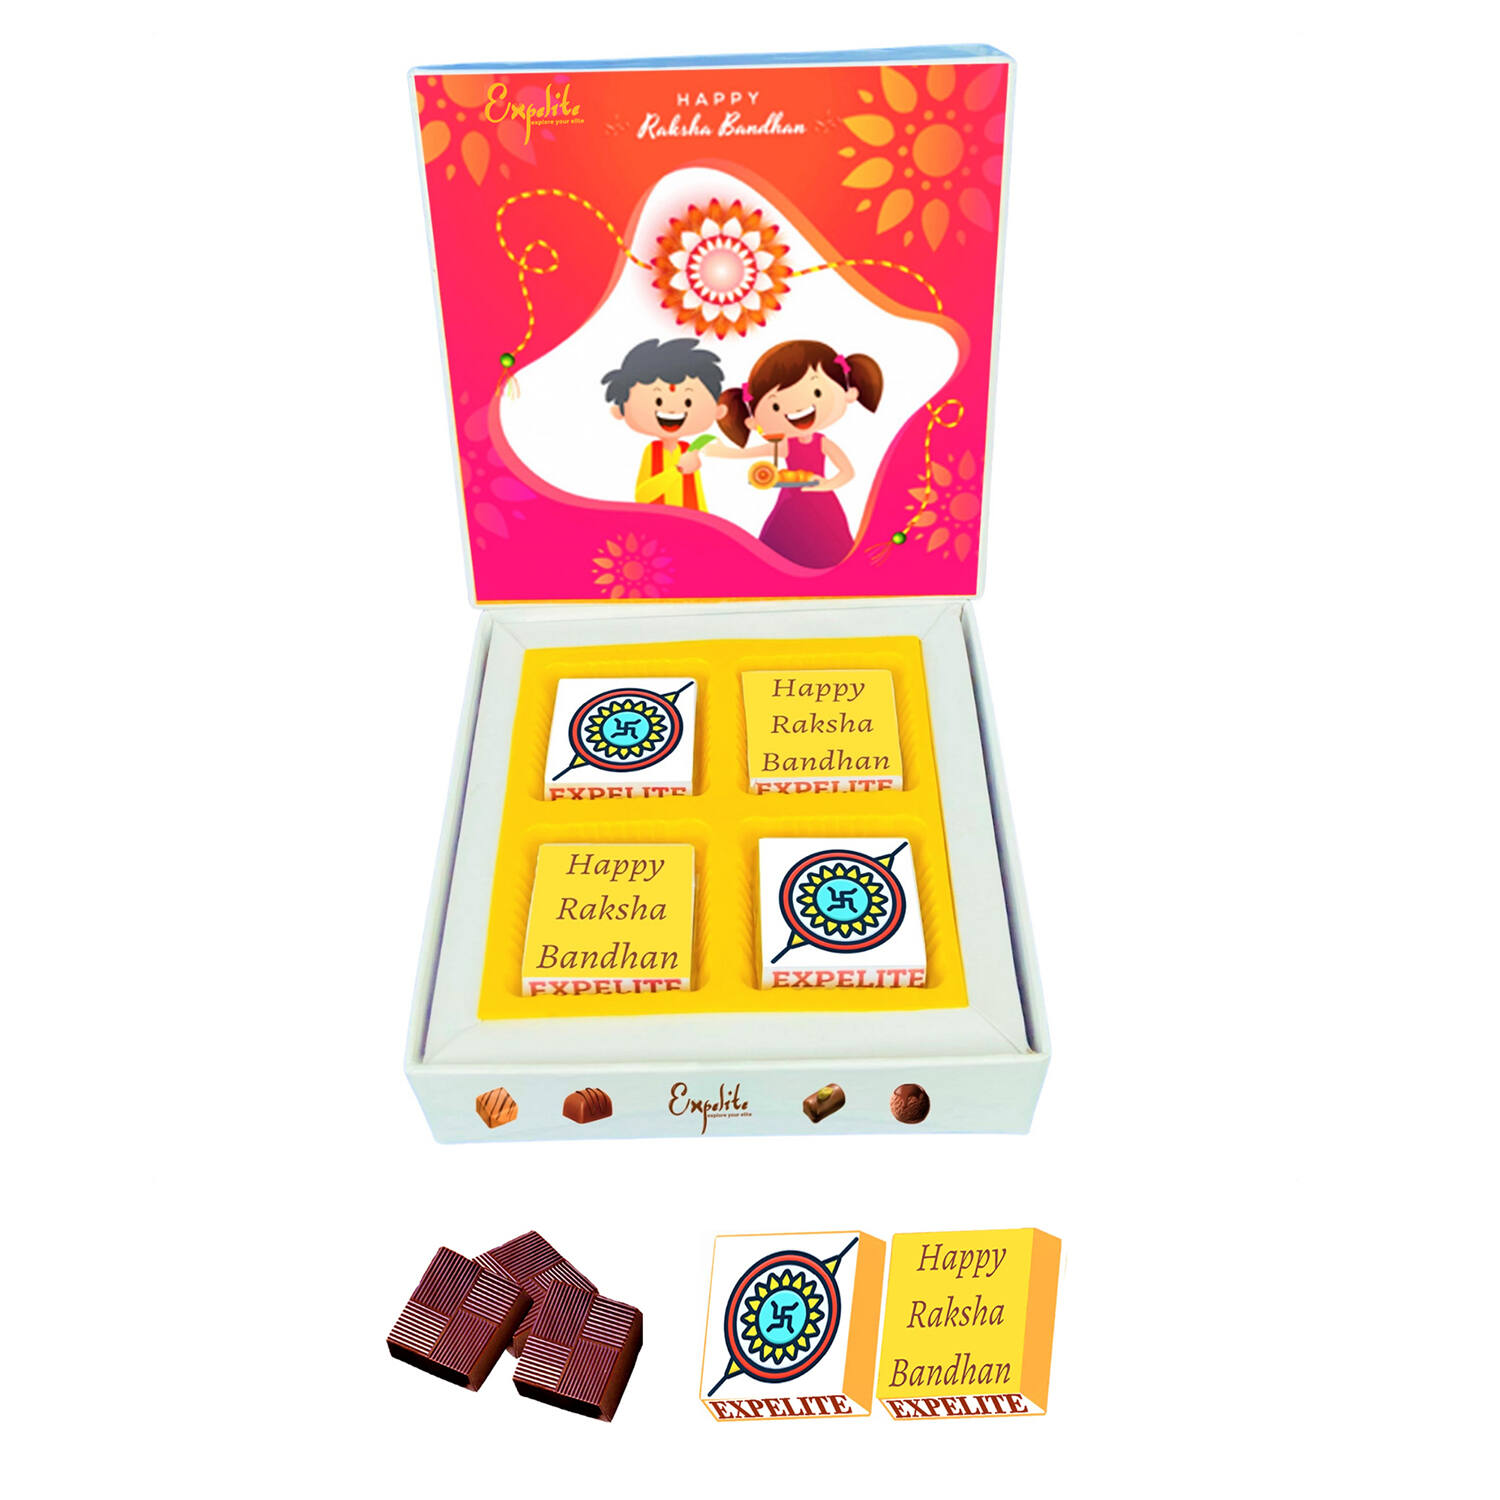 Best Gift For Sister On Raksha Bandhan- Rakhi Gifts Ideas